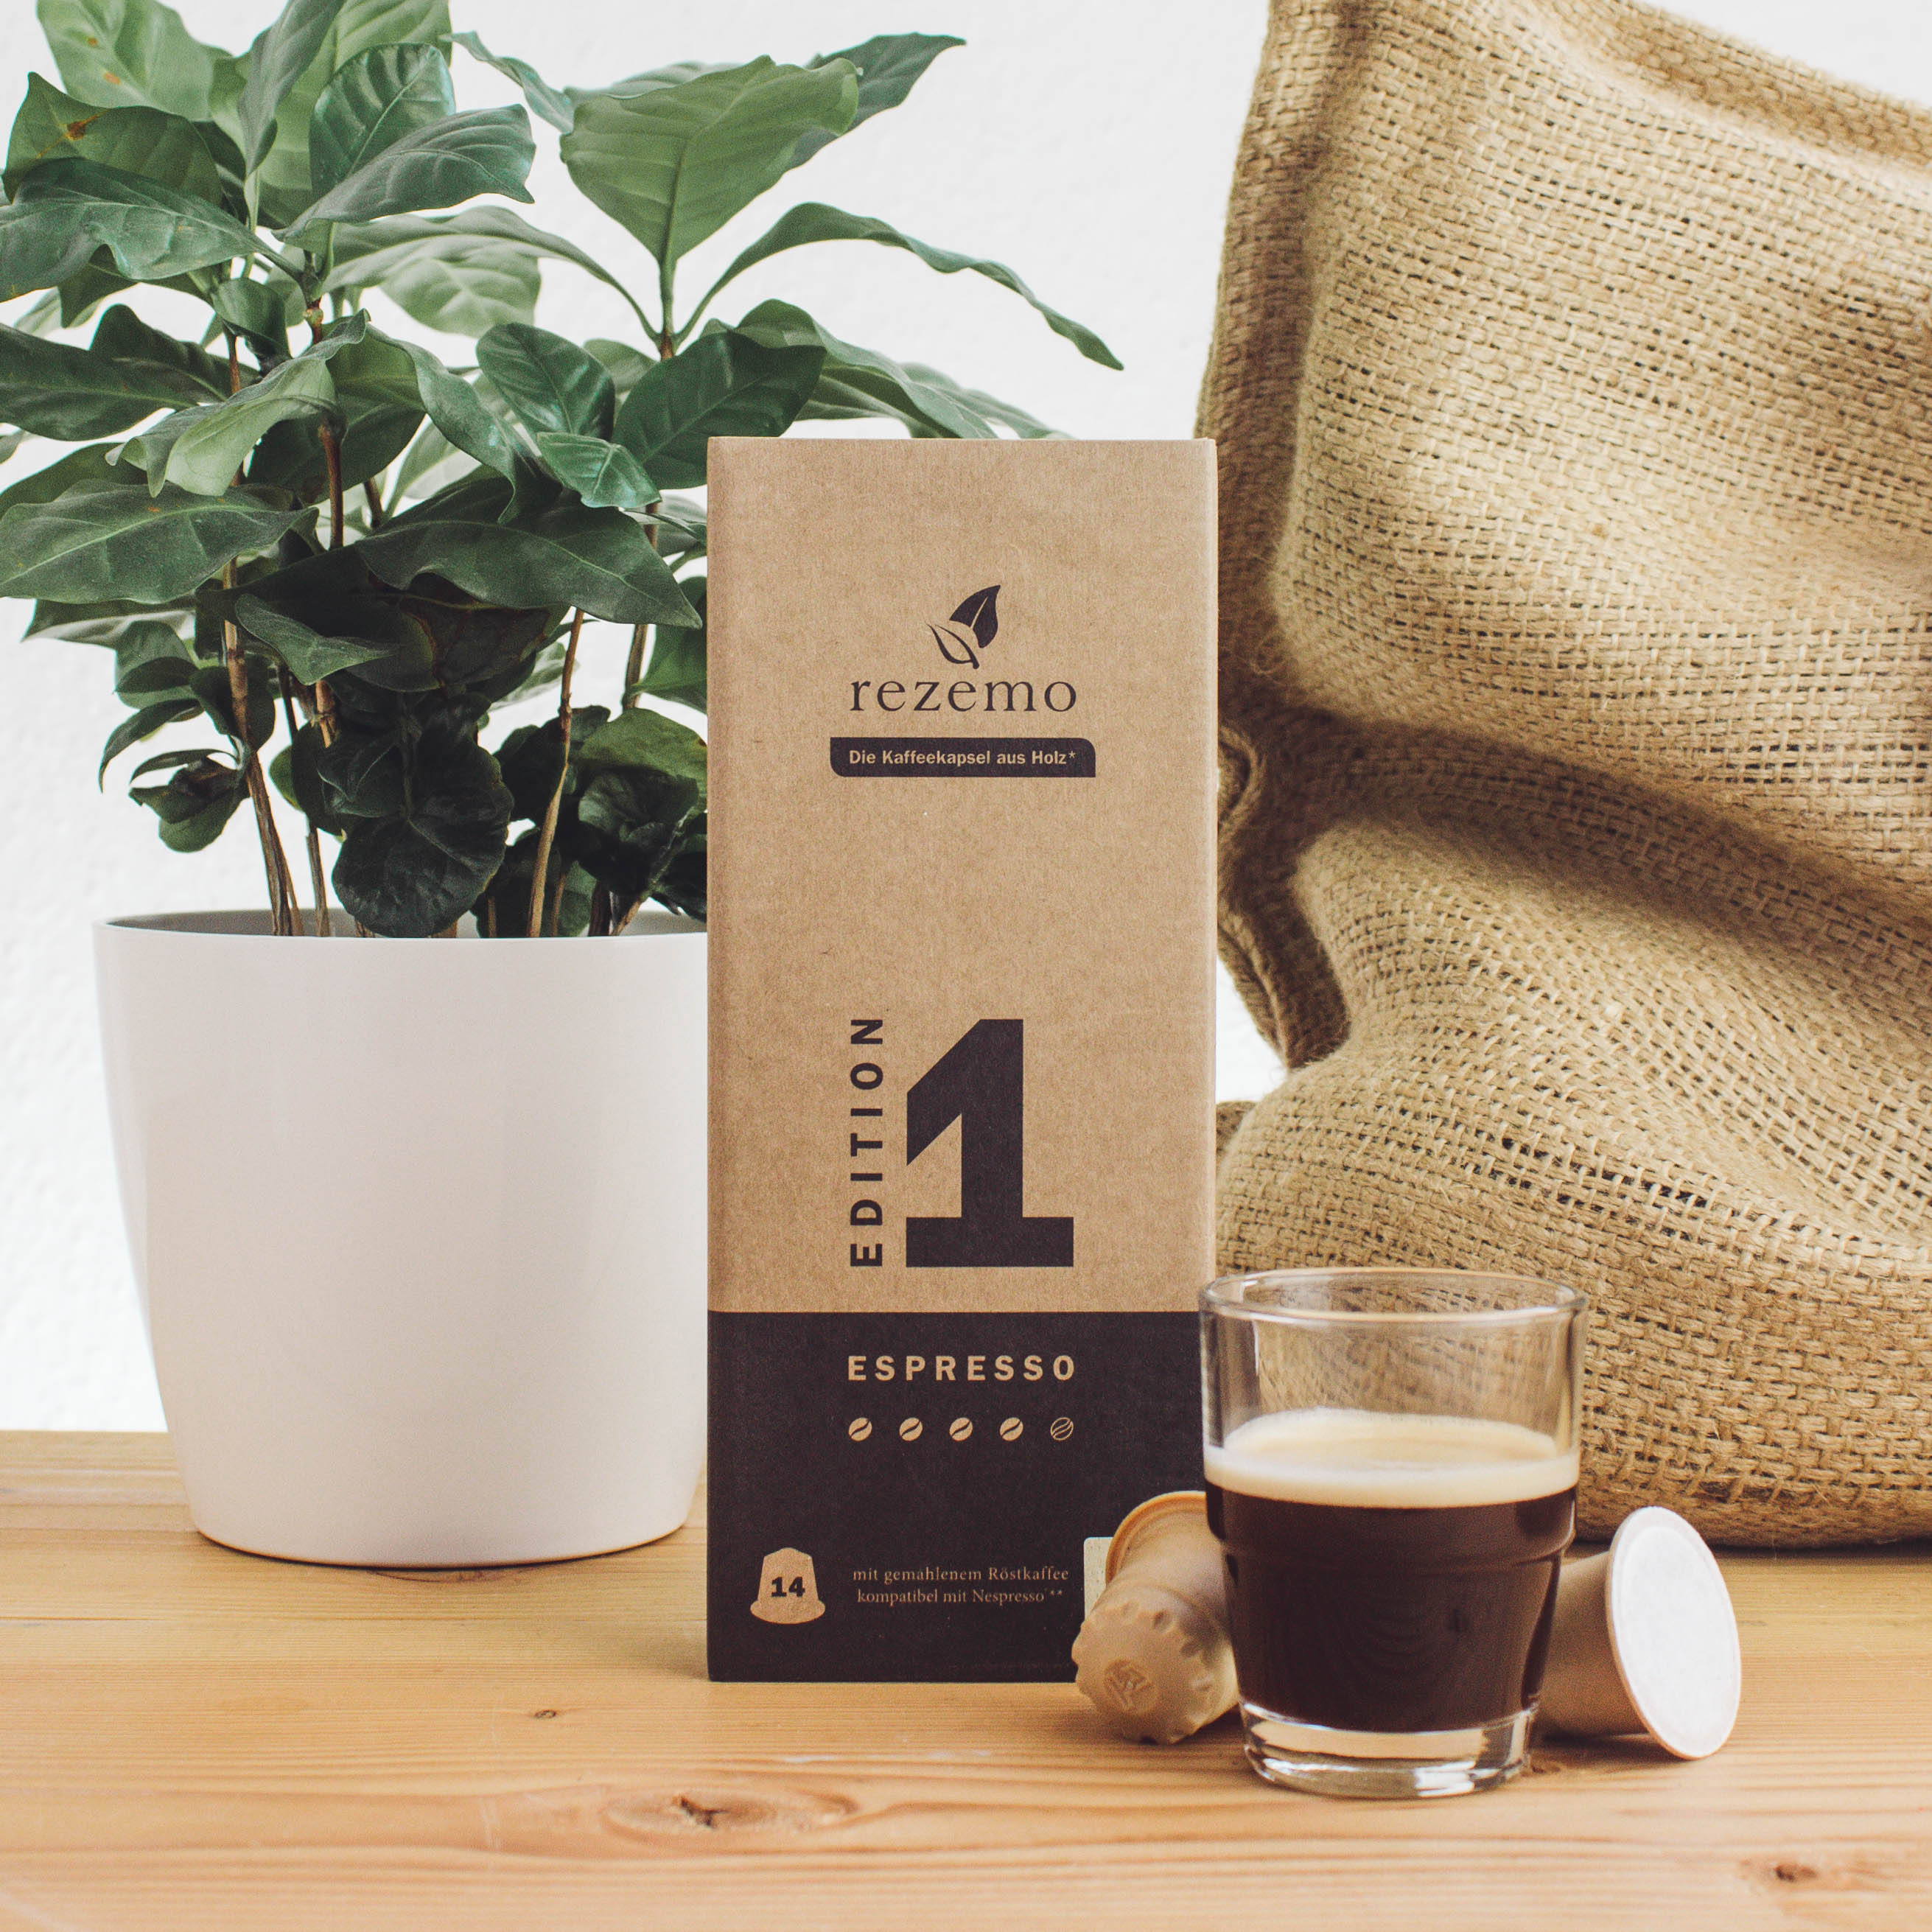 Eine Kaffeepflanze, eine rezemo-Verpackung und eine gefüllte Glas-Kaffeetasse vor einem Jutesack.